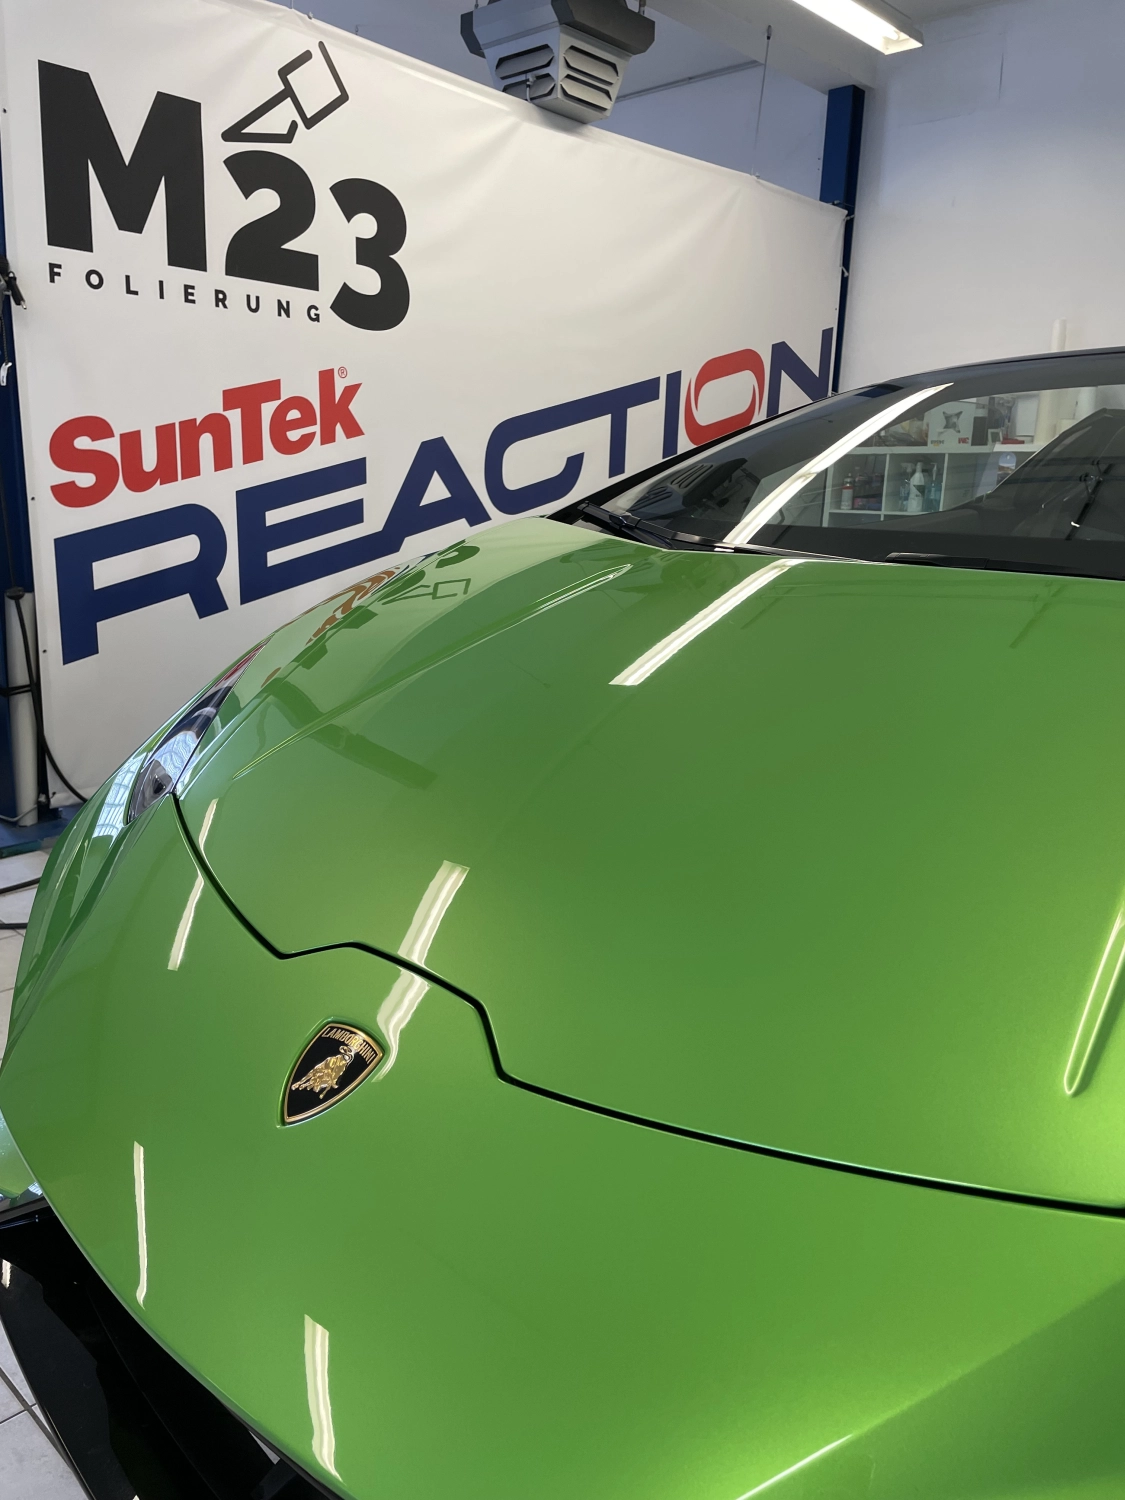 M23 folierung, grünes Auto